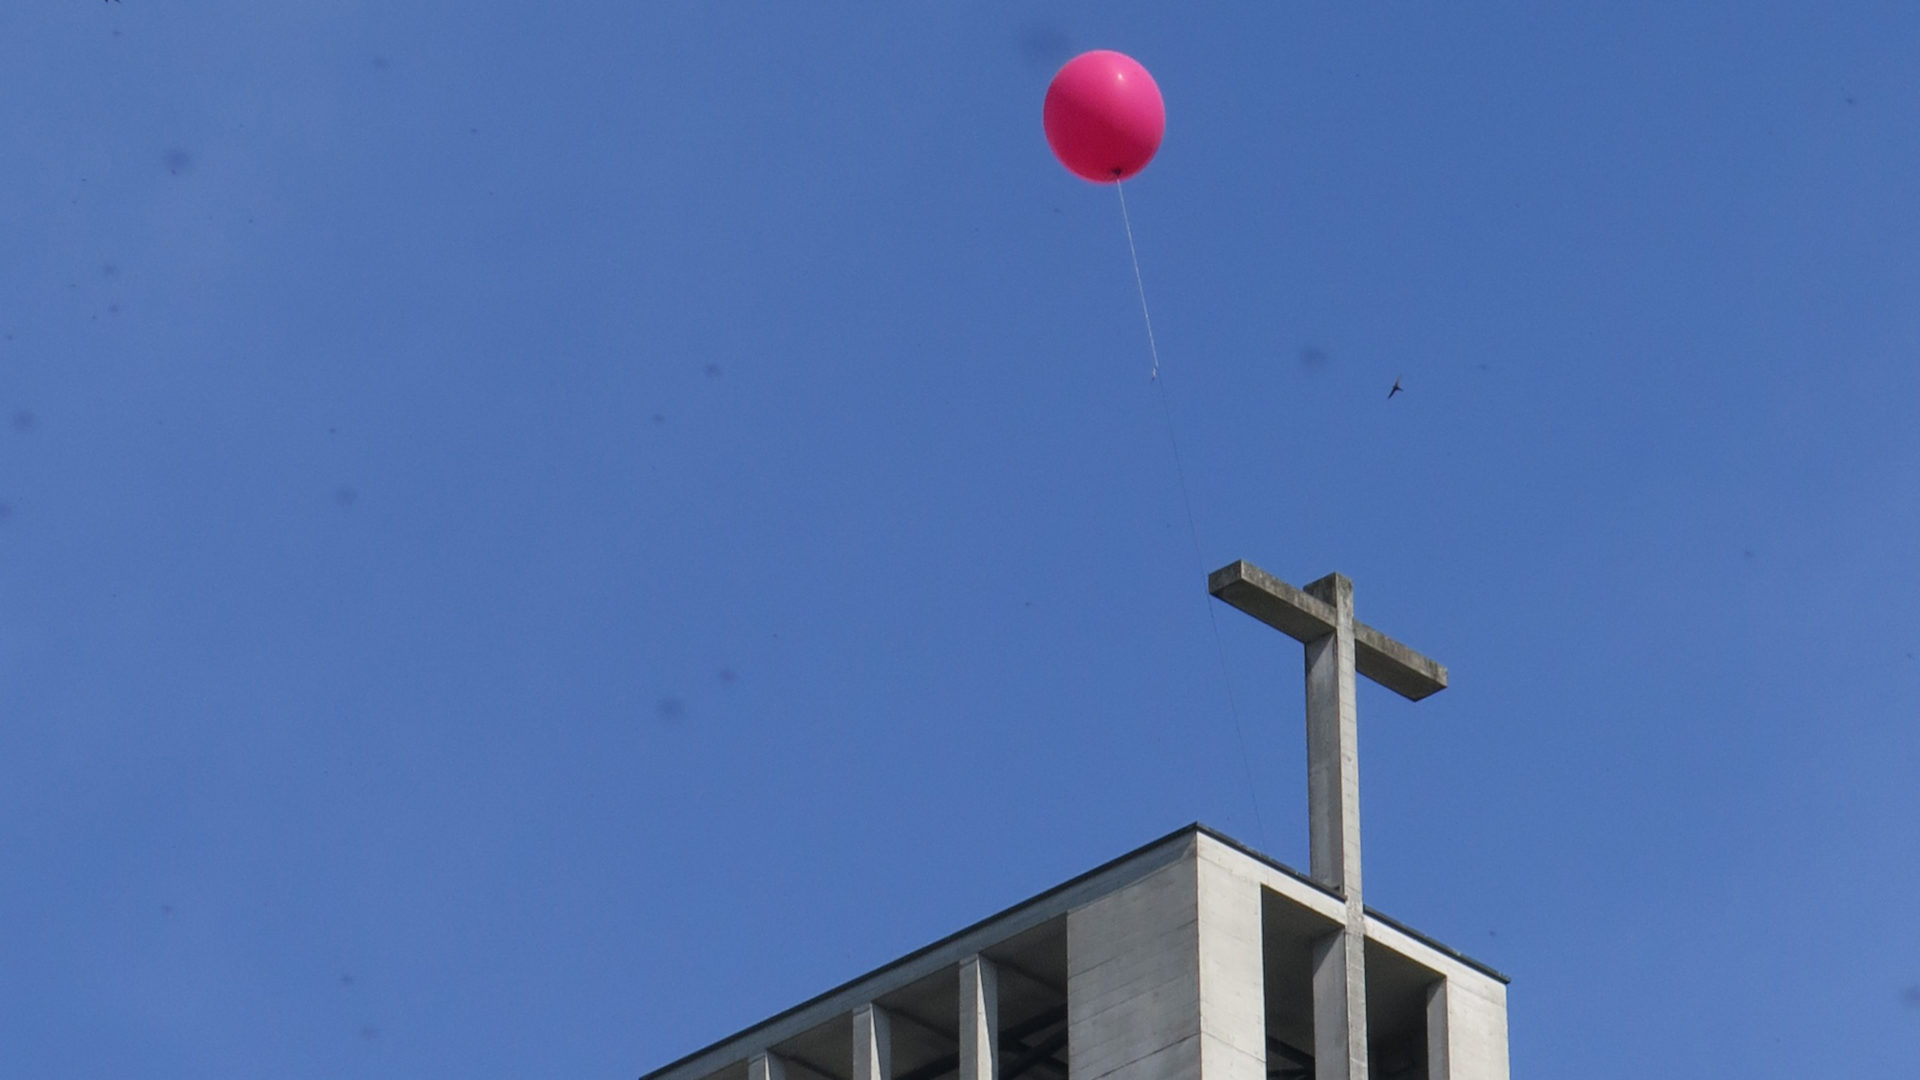 Ballon zum Frauenstreik am Turm der St.-Karli-Kirche Luzern, 2019